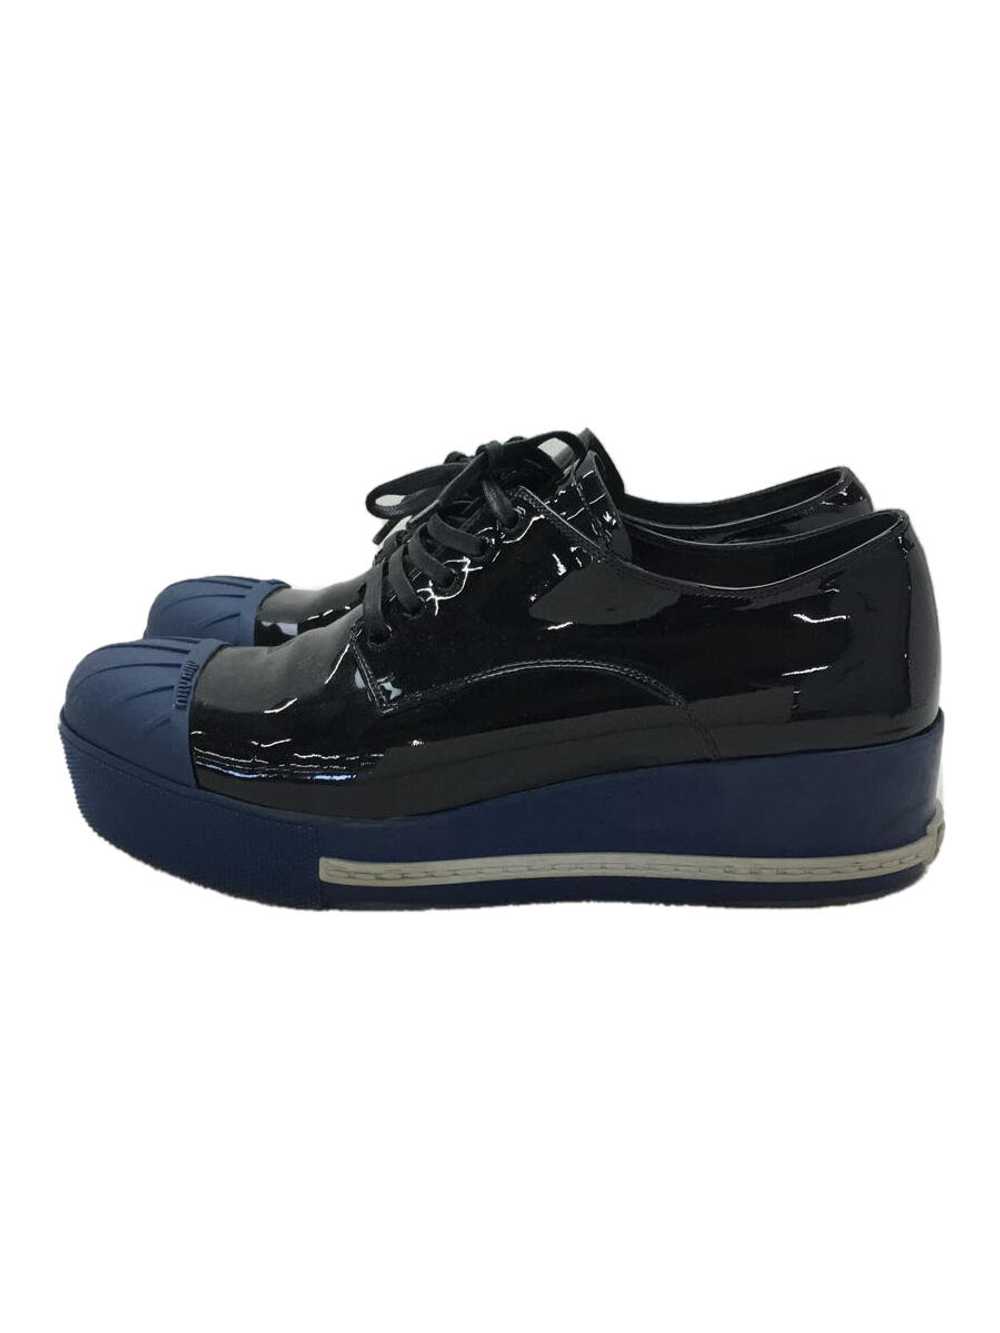 Miu Miu Low Cut Sneakers/36/Blk/5E121A Shoes Bbz23 - image 1